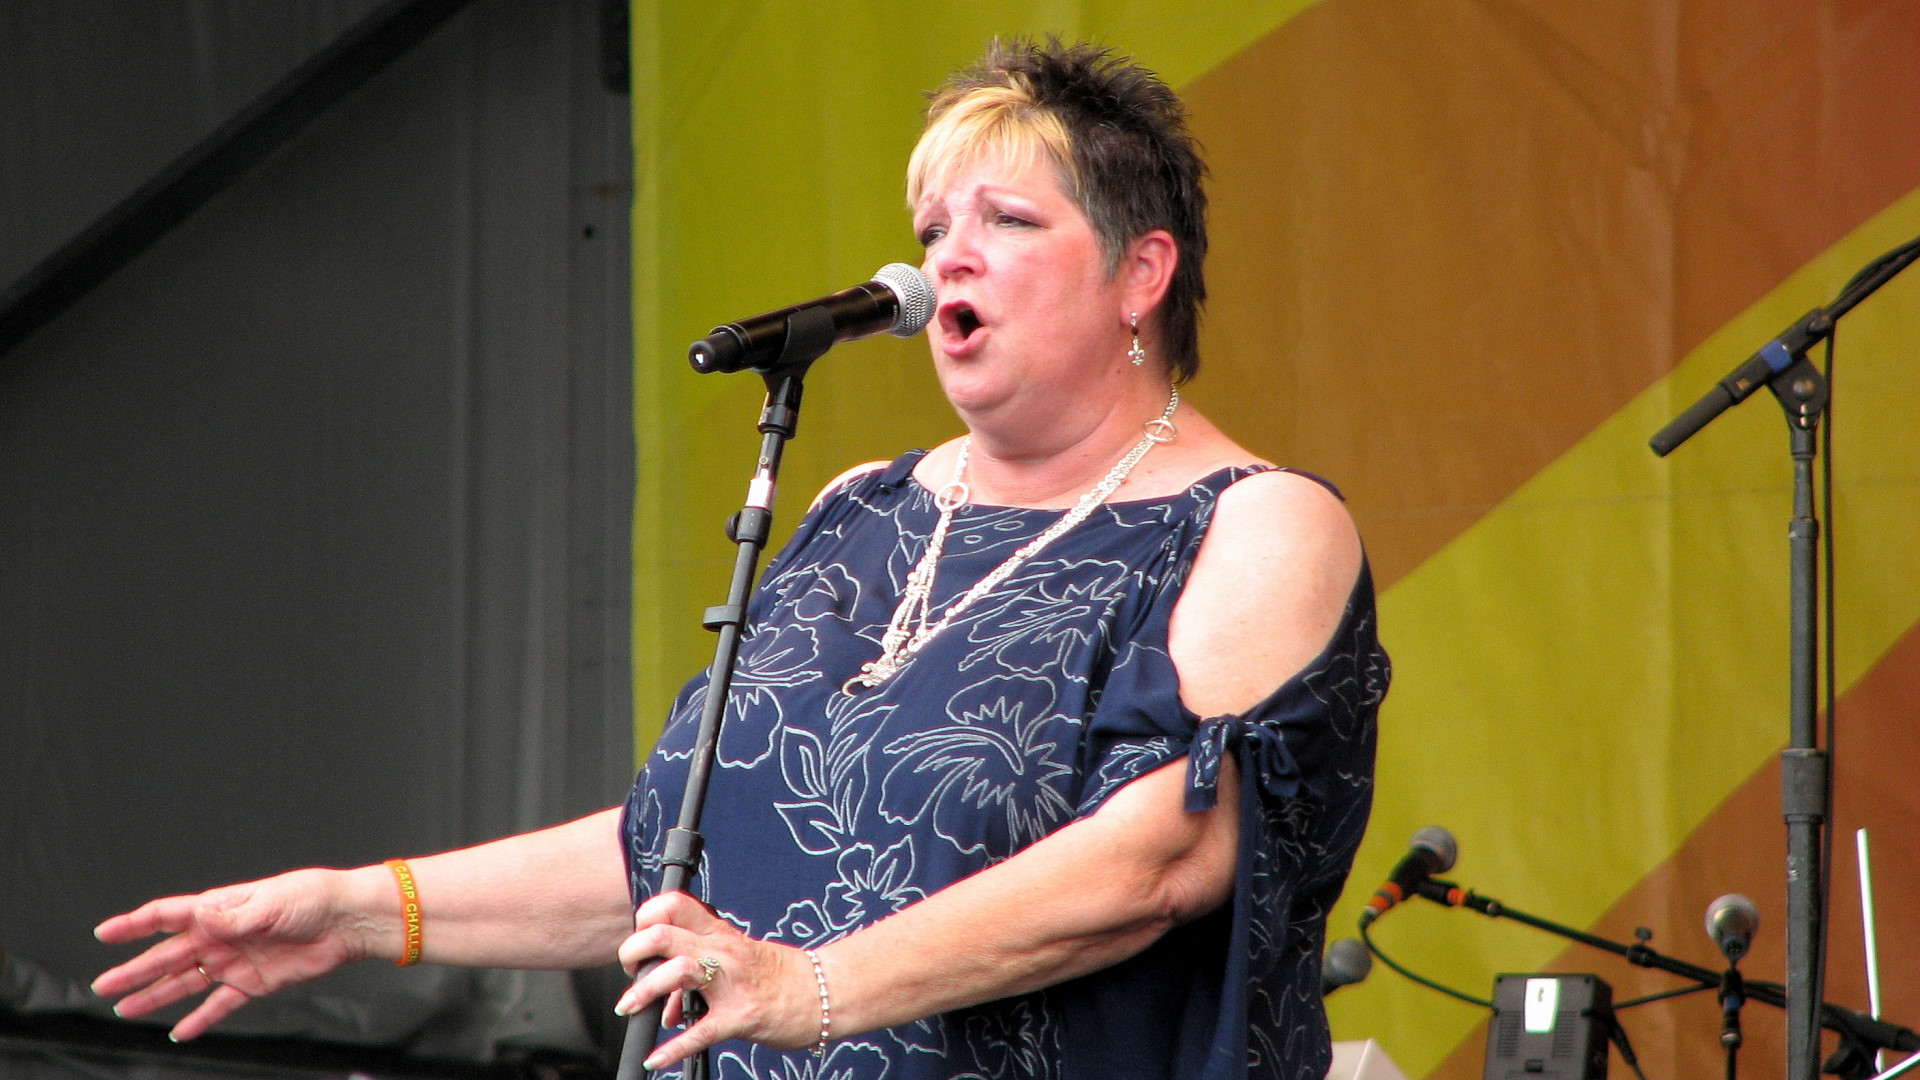 Wiseguys vocalist Kathy Savoie